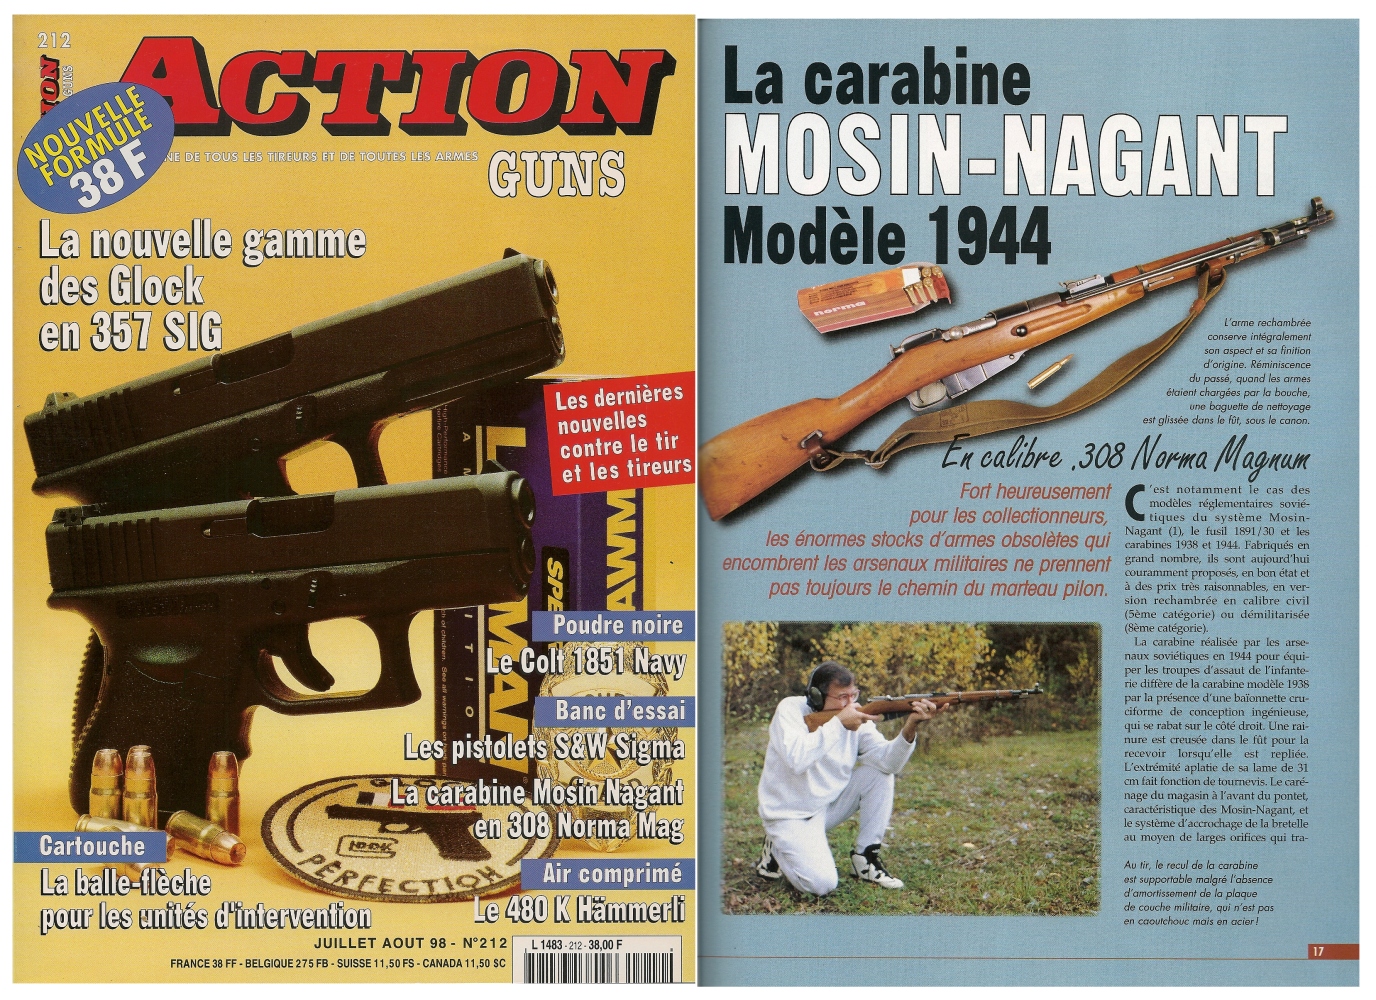 Le banc d’essai de la carabine Mosin-Nagant modèle 1944 a été publié sur 4 pages dans le magazine Action Guns n°212 (juillet-août 1998). 